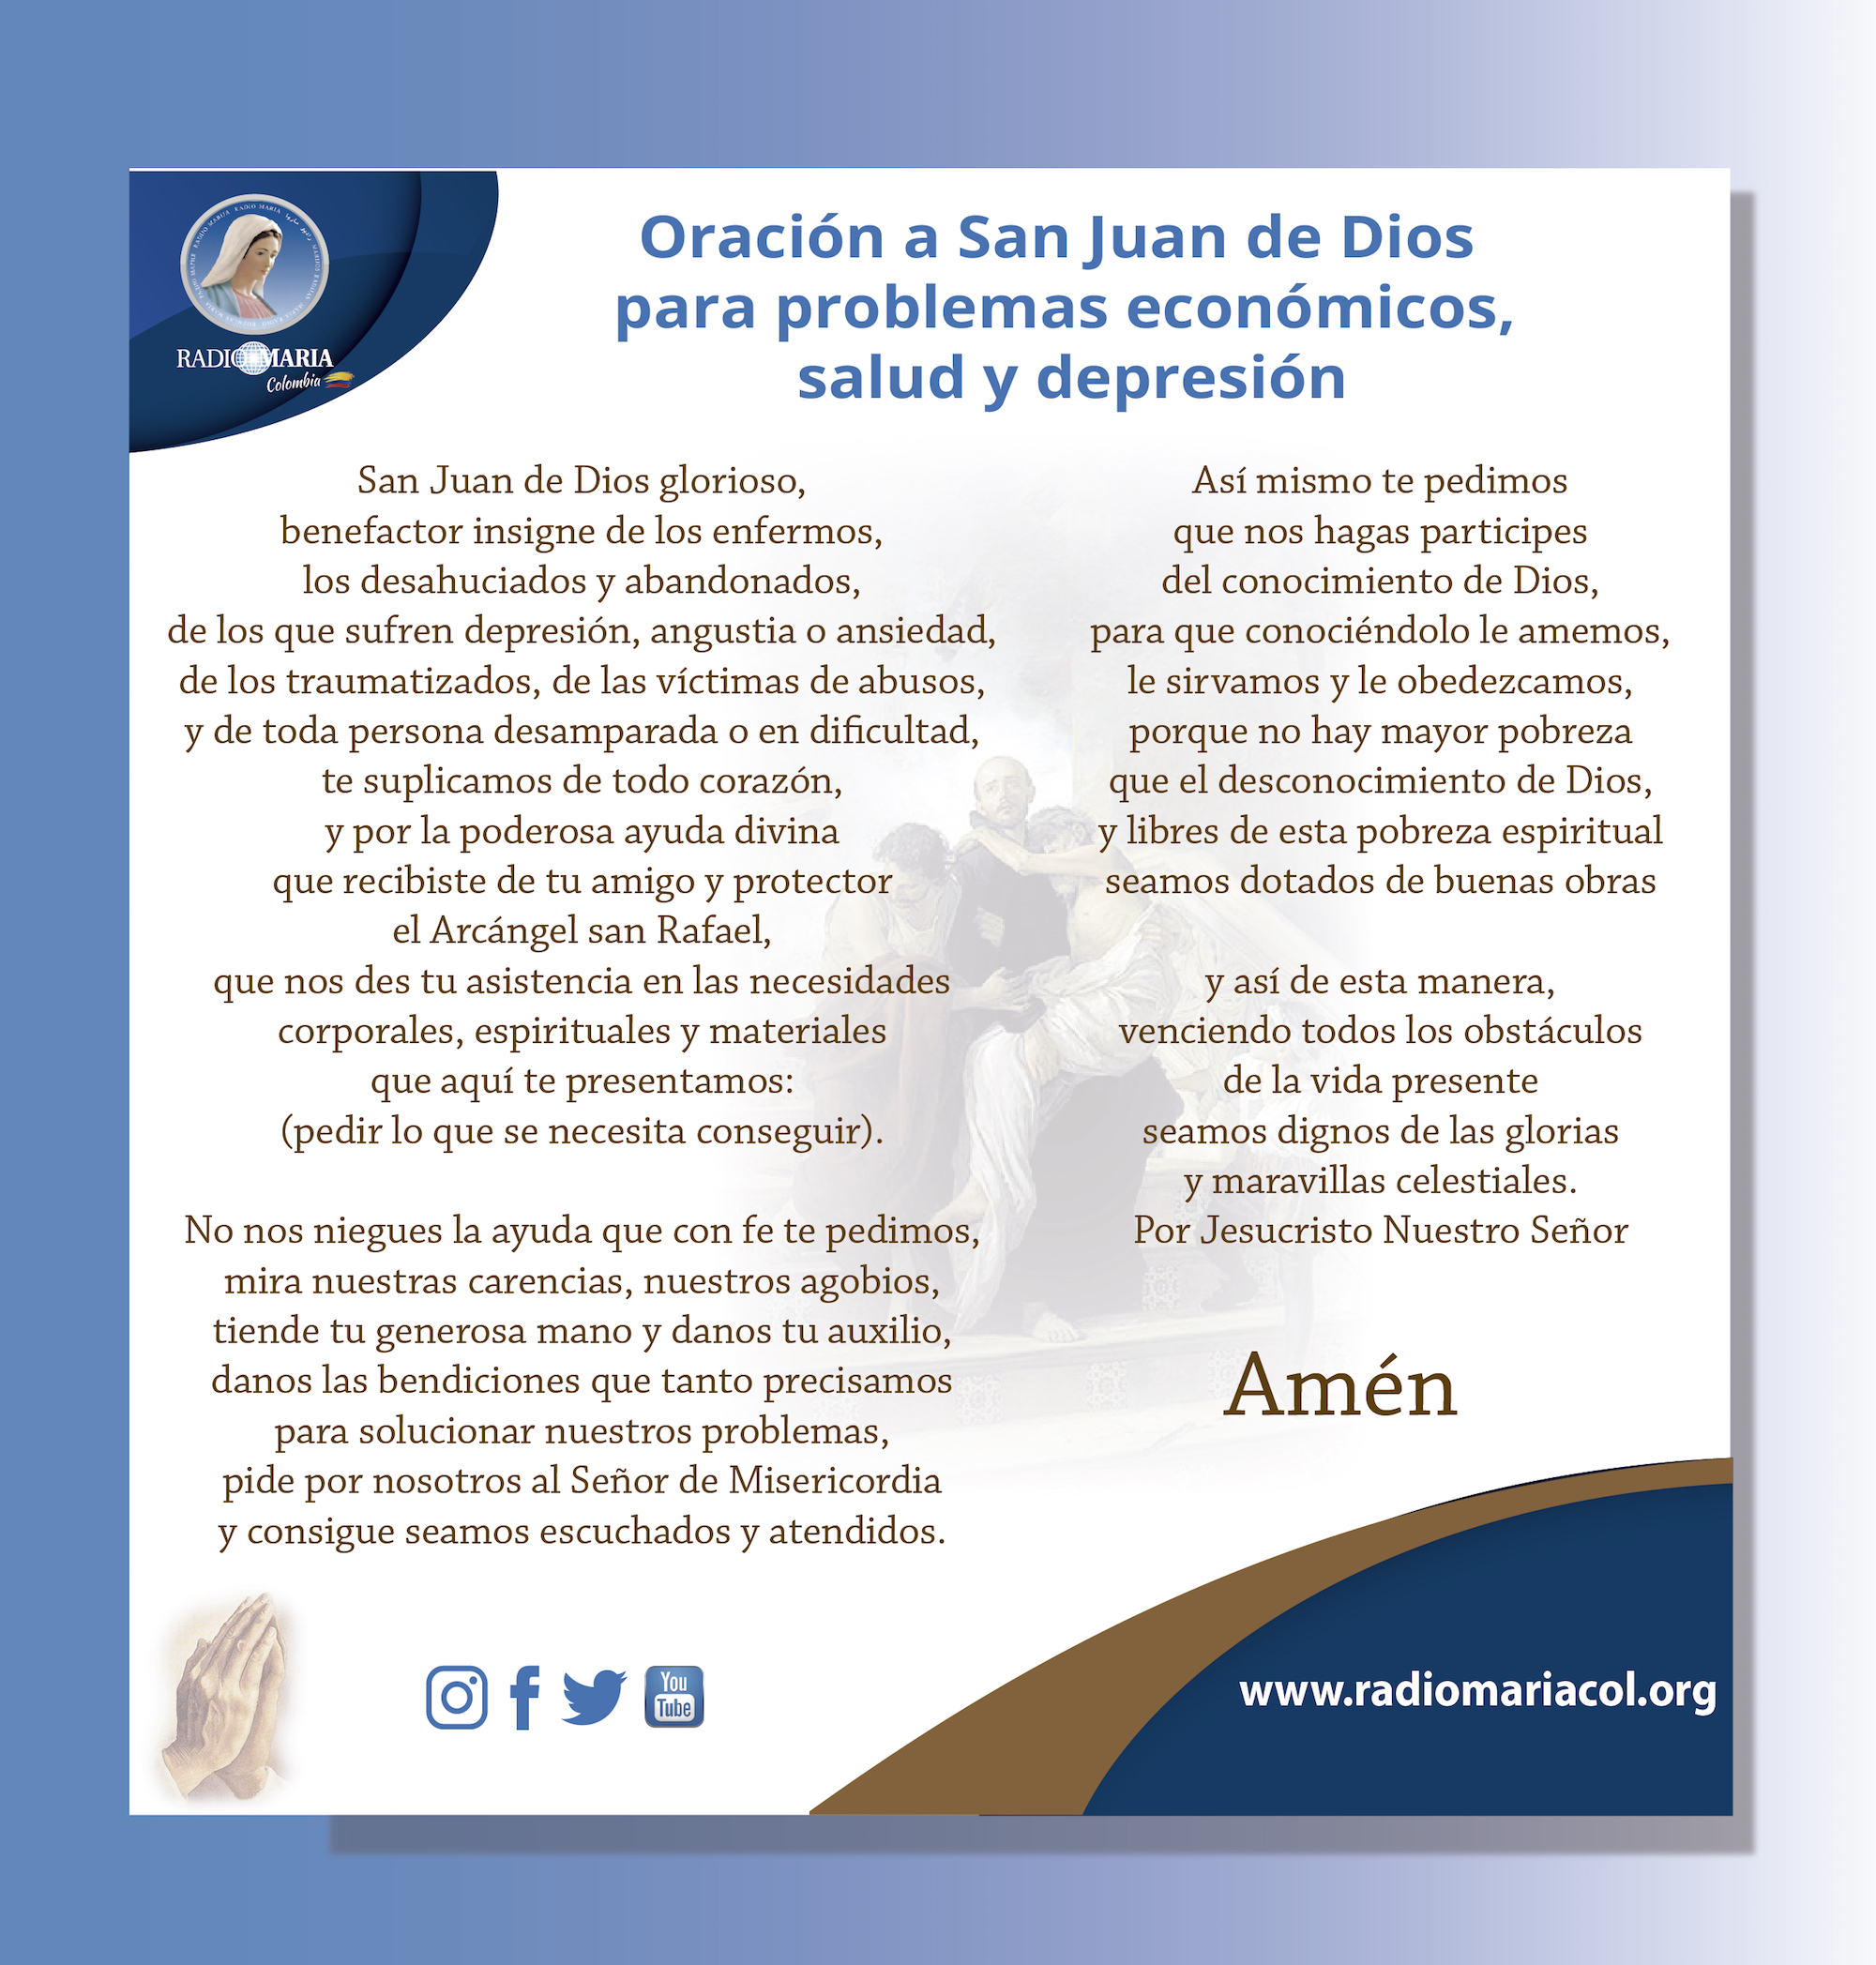 Oración a San Juan de Dios para problemas económicos, salud y depresión